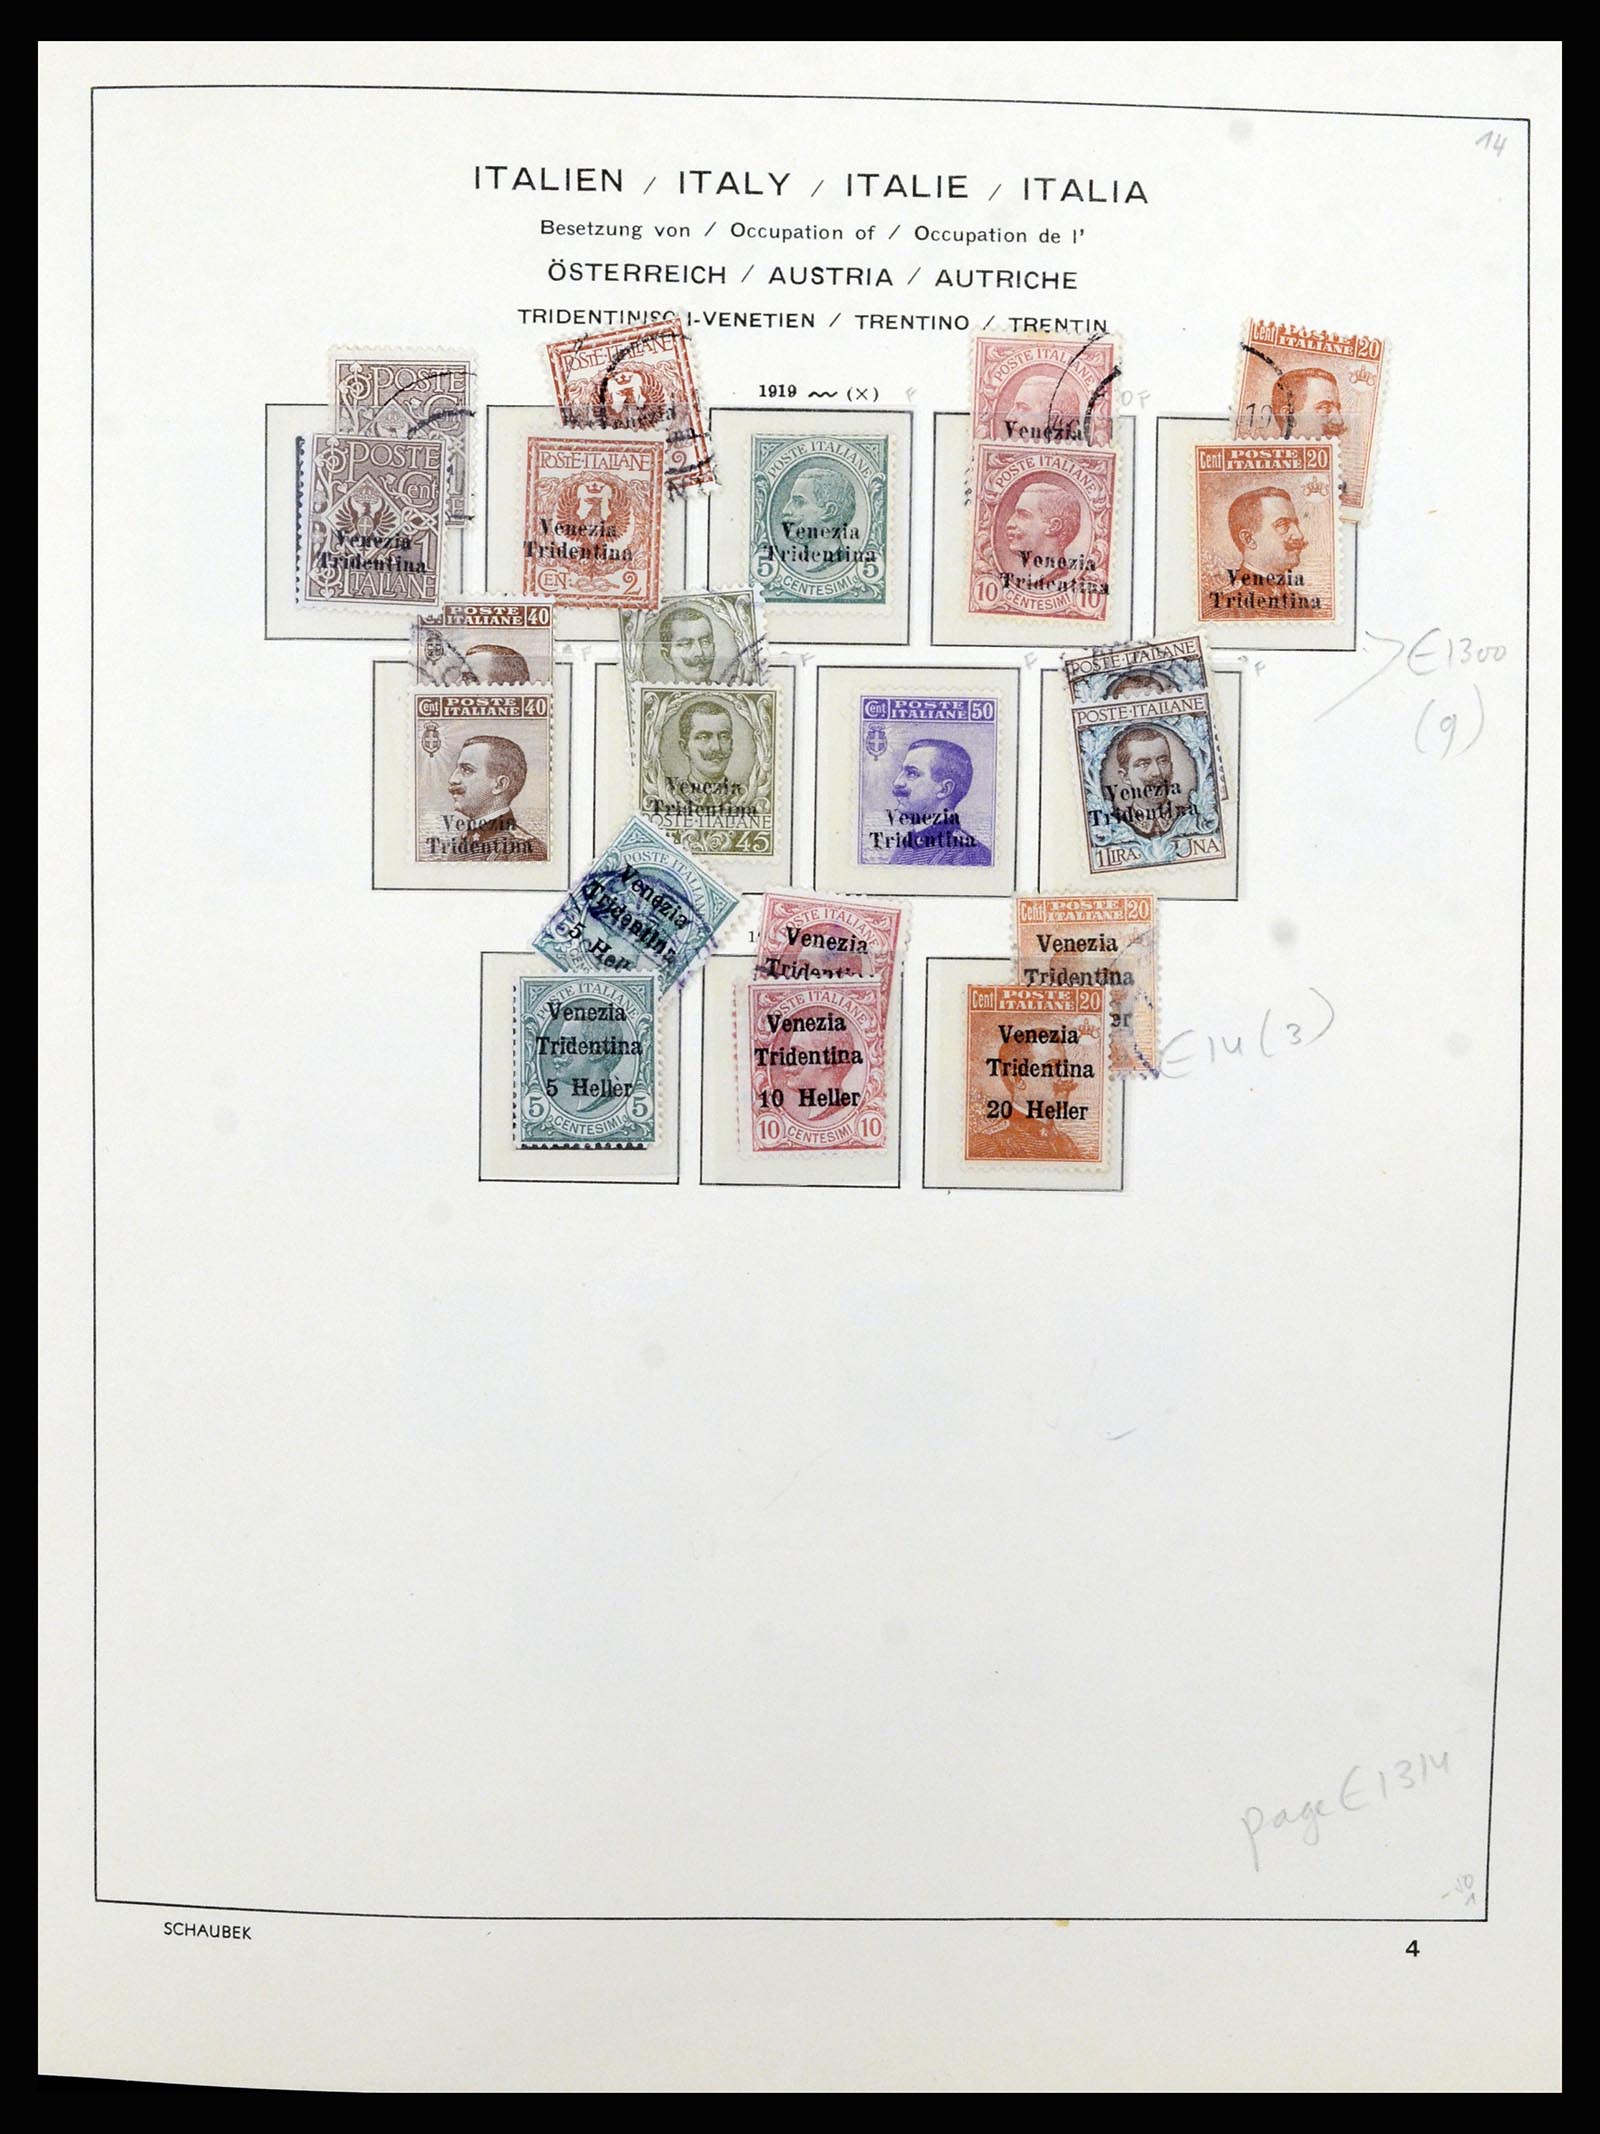 36577 008 - Stamp collection 36577 Italiaanse gebieden 1870-1940.